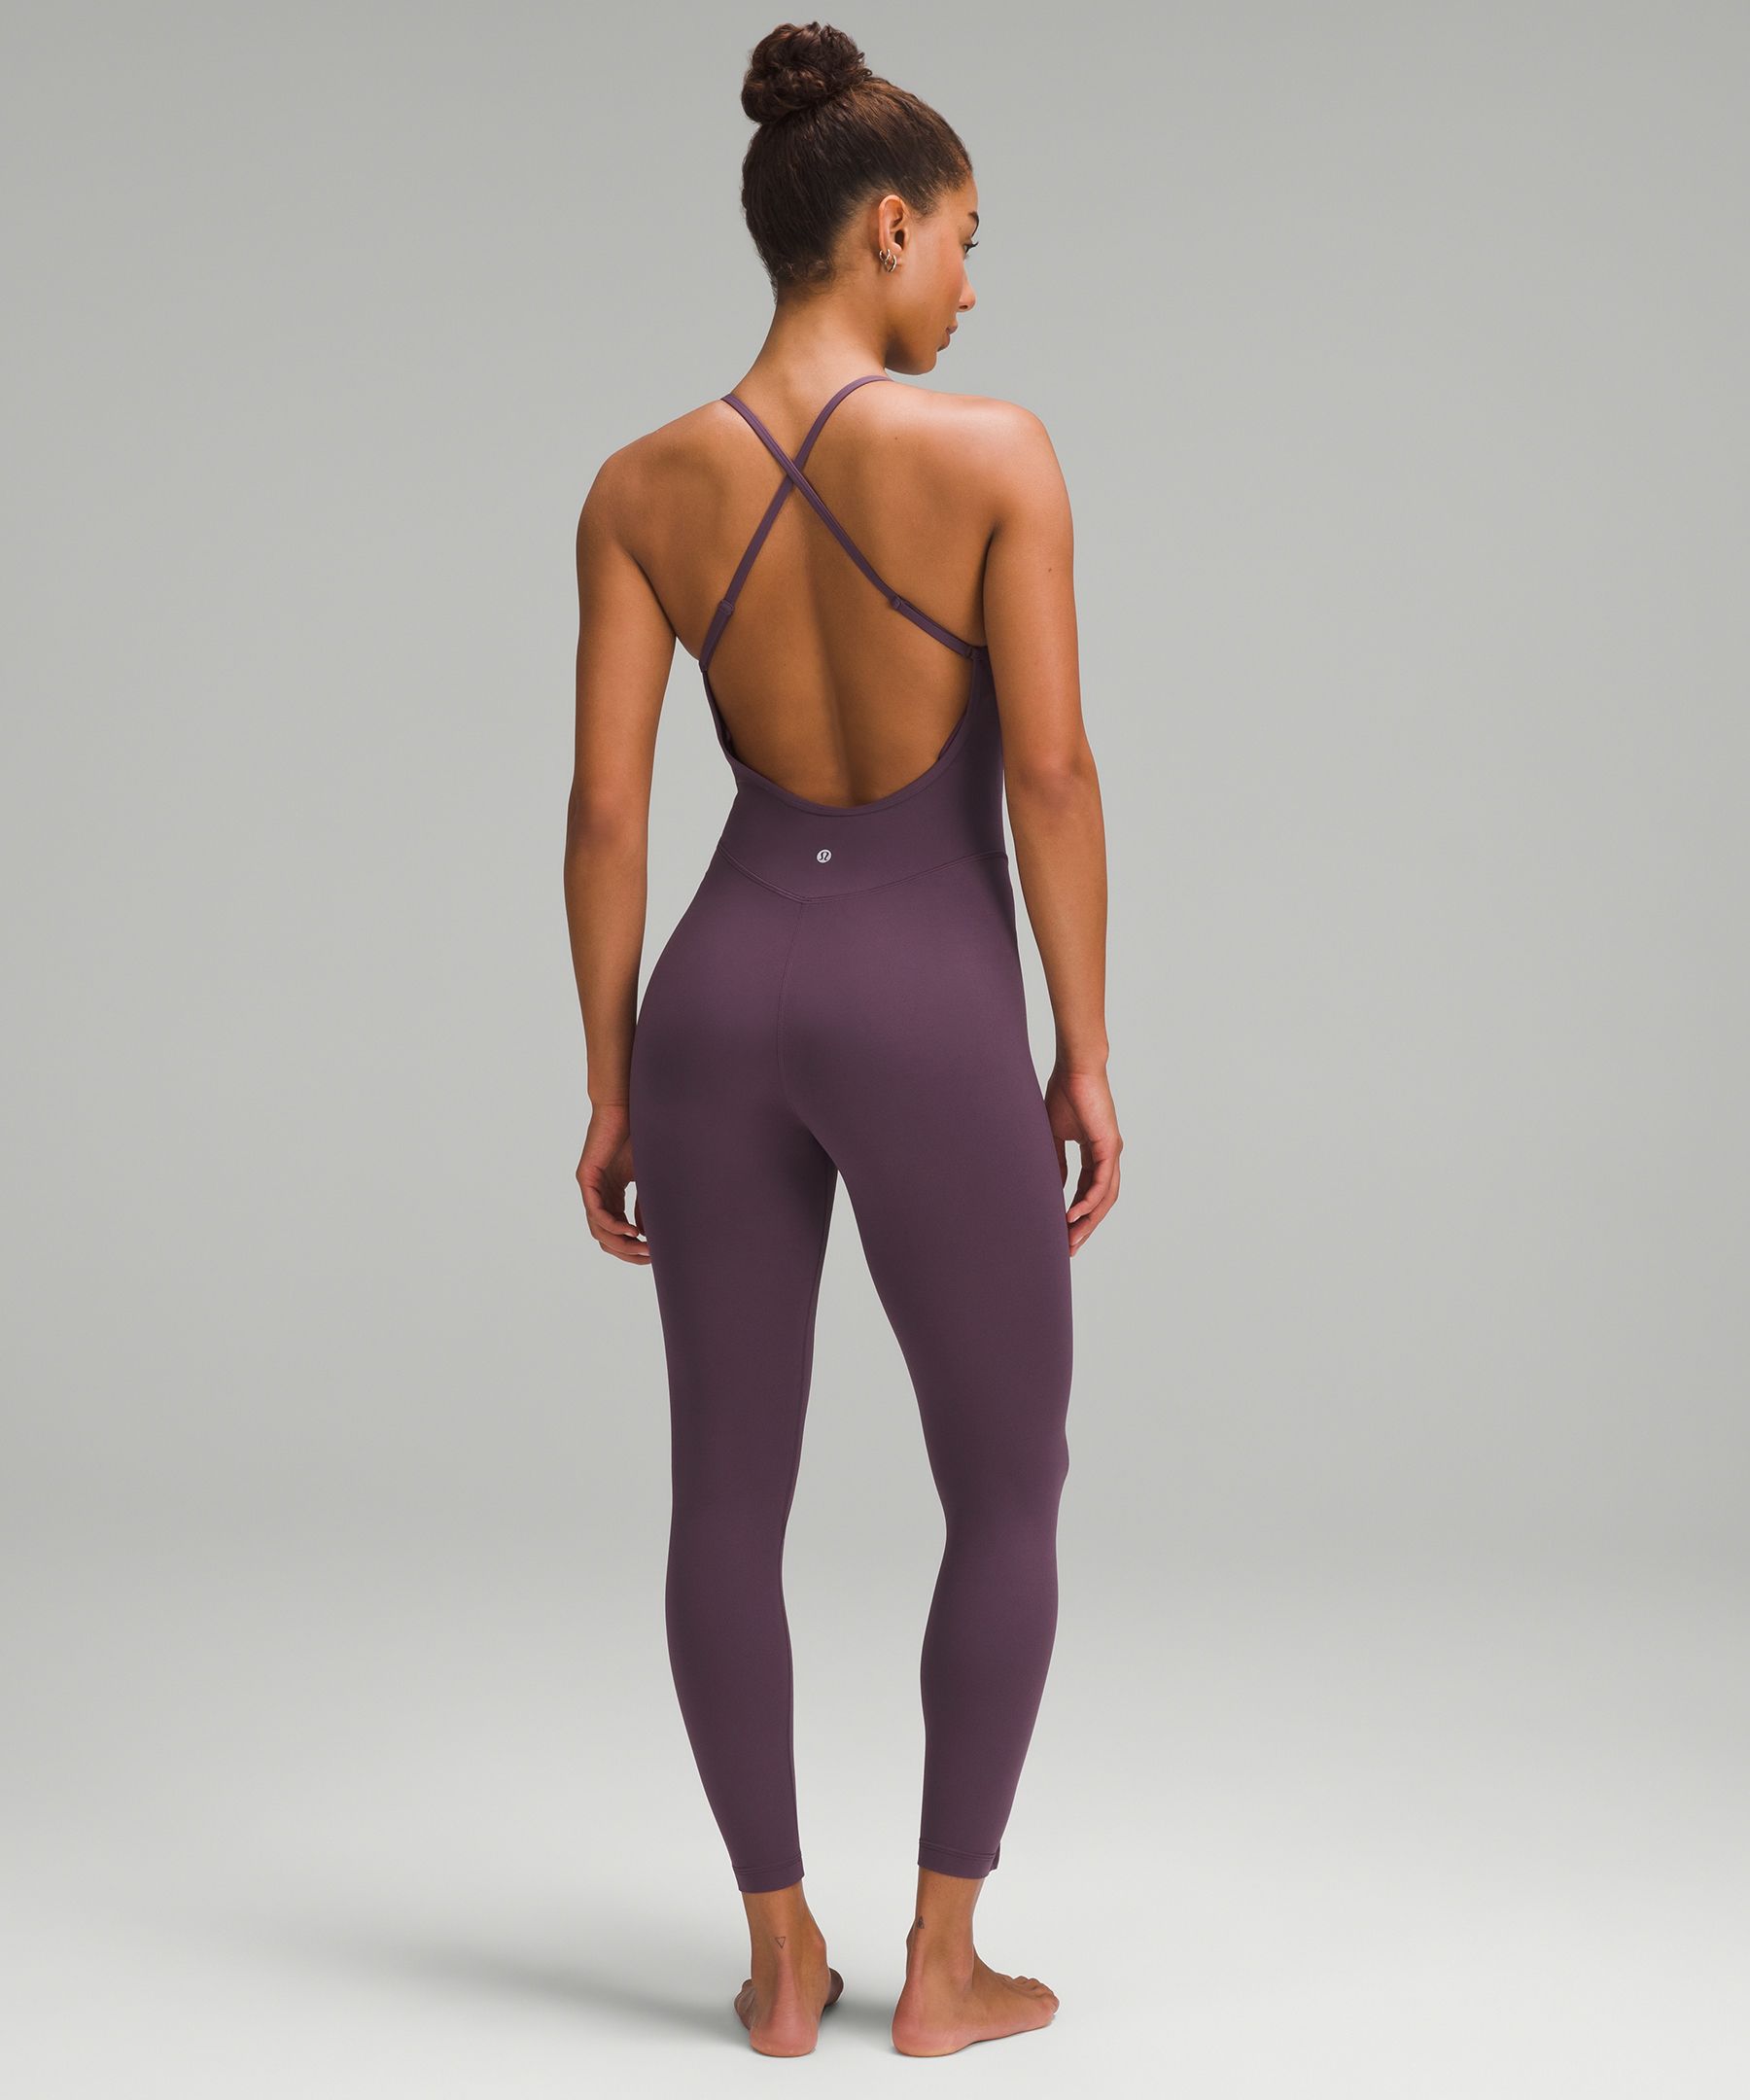 Lululemon Cross-Back Nulu Yoga Bodysuit 25 - Dark Oxide - lulu fanatics